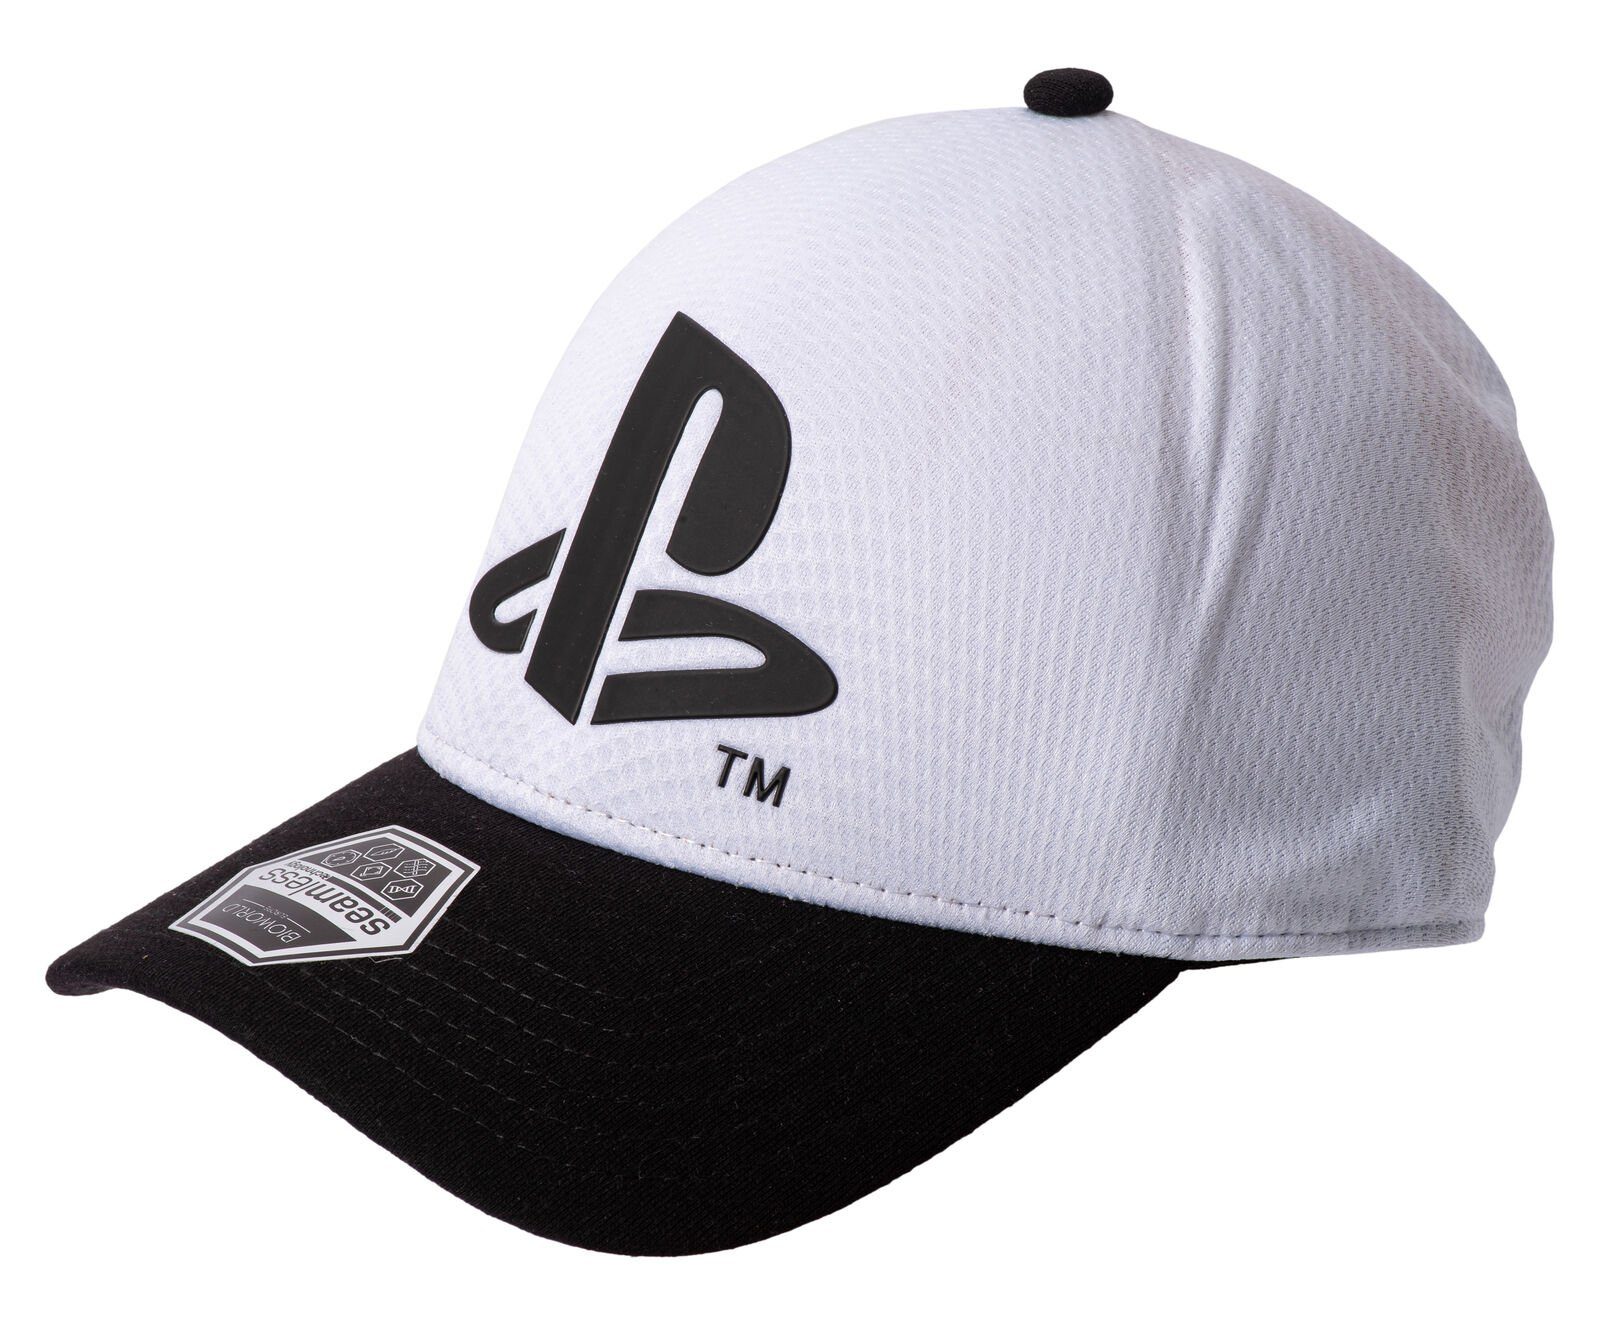 Playstation Baseball Cap PLAYSTATION Baseballcap Cappy PS5 PS4 Gaming Schirmmütze weiß - schwarz